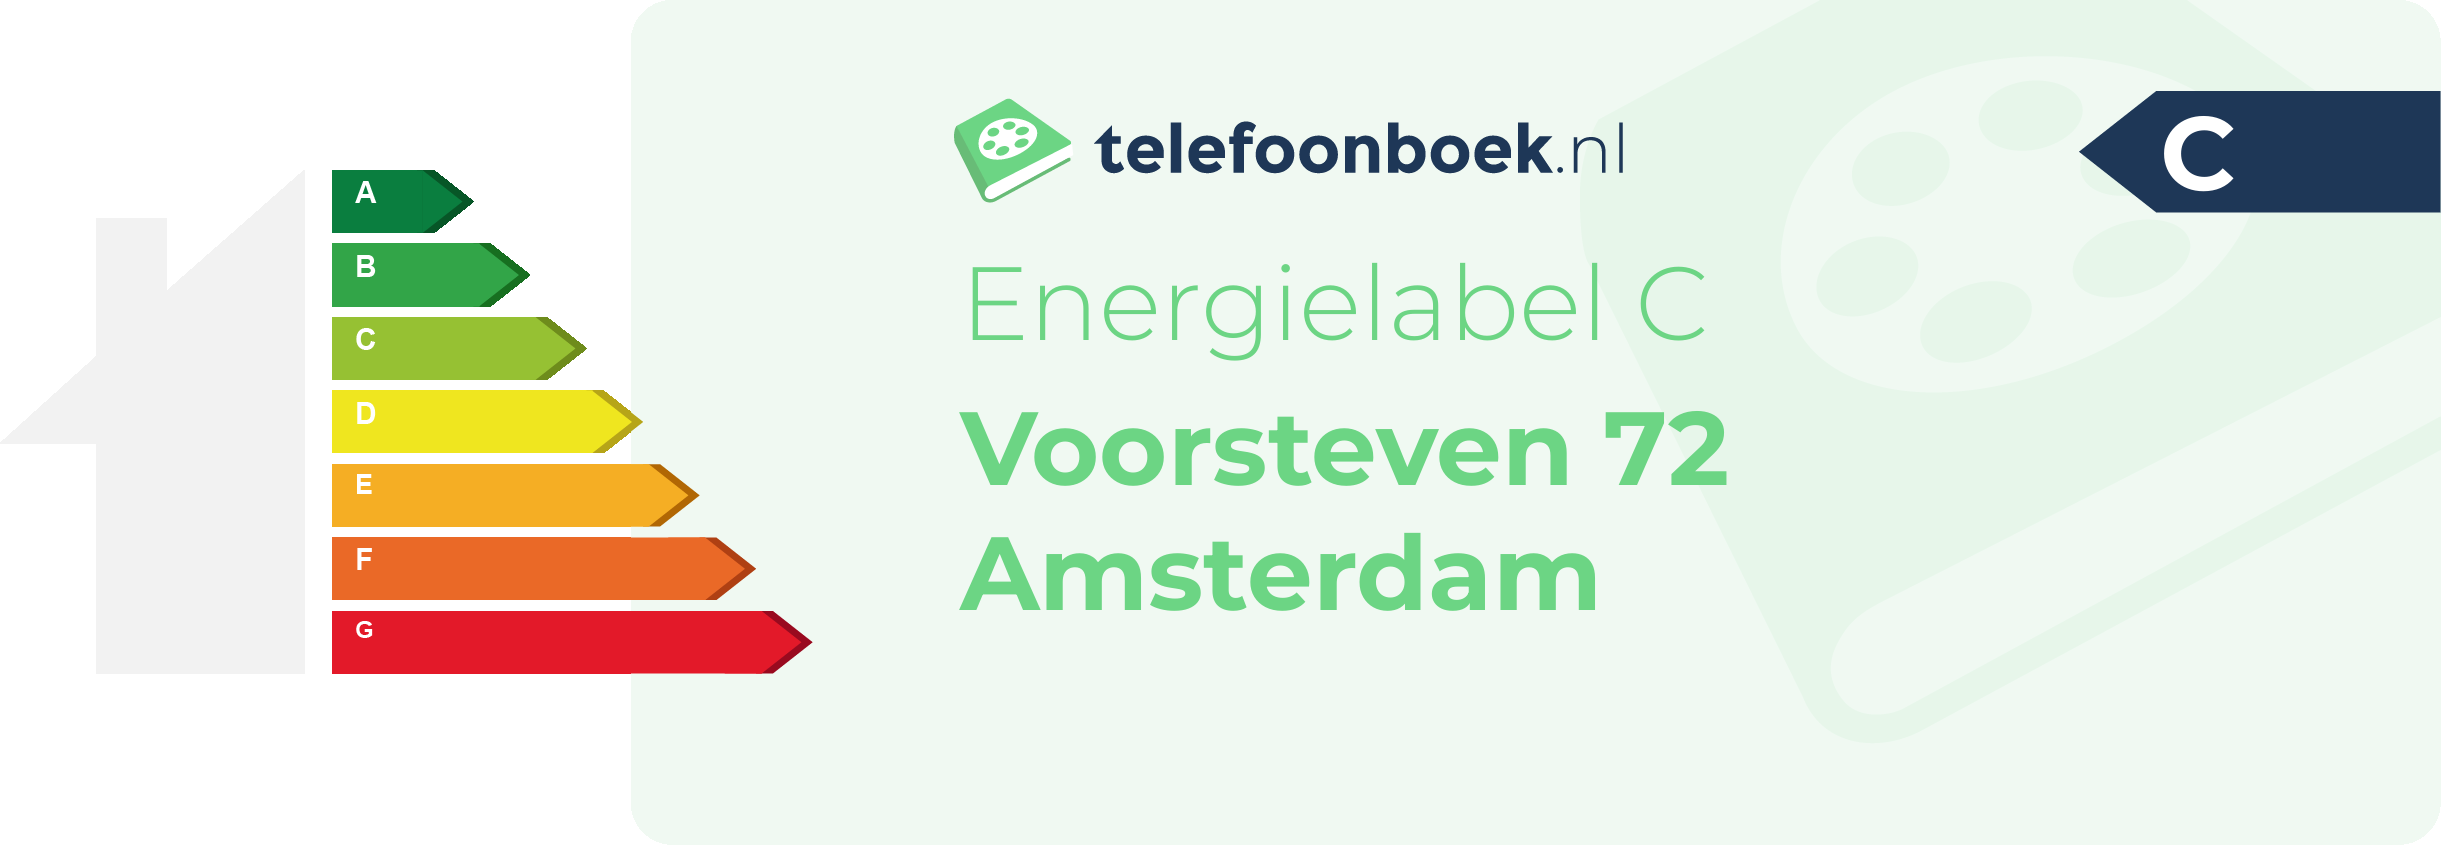 Energielabel Voorsteven 72 Amsterdam